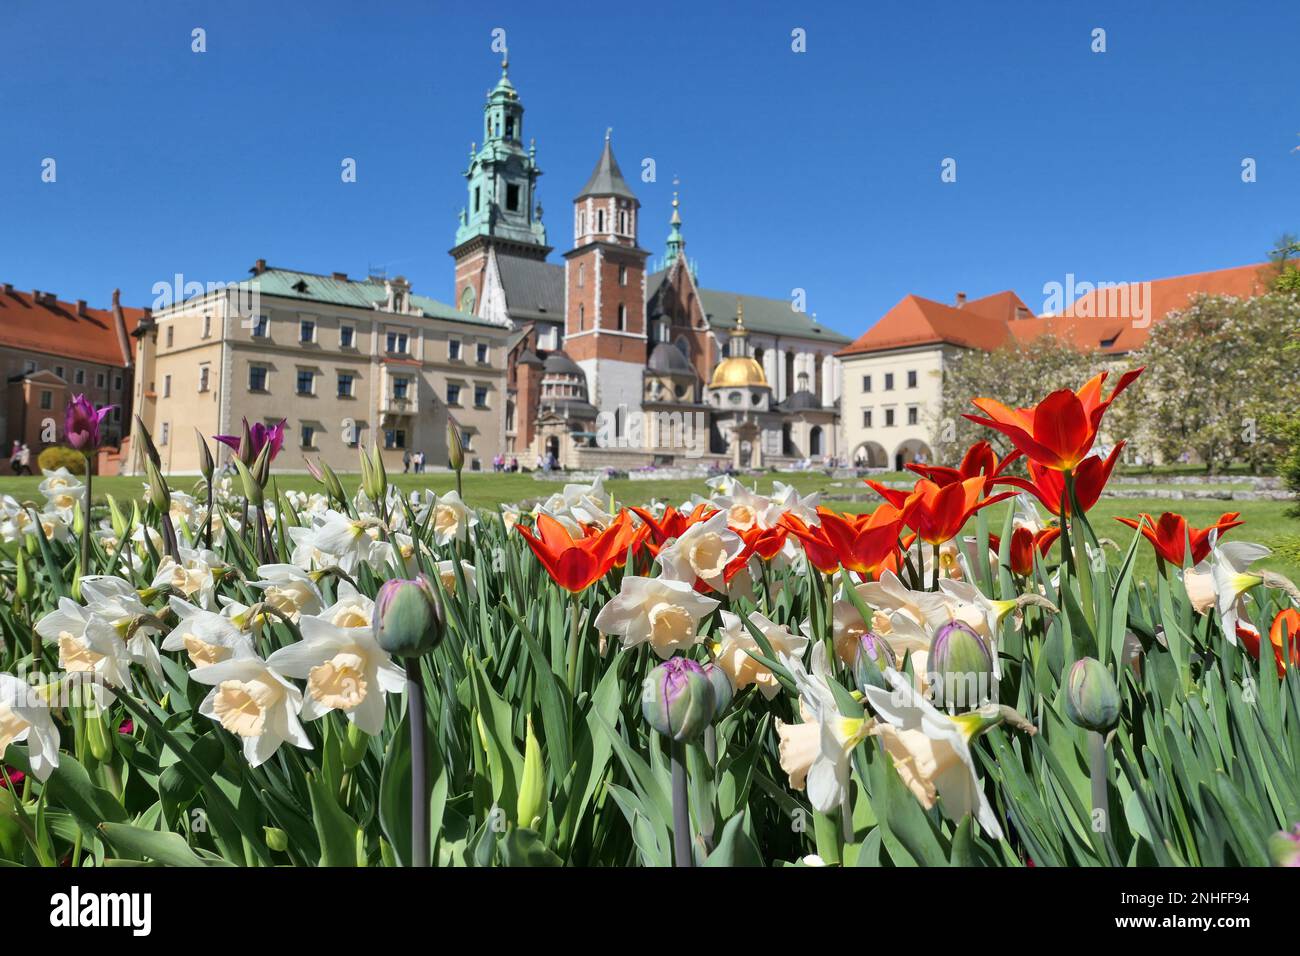 Castillo de Wawel en Cracovia, Polonia durante la primavera. Tulipanes y flores de narcisos en el jardín del castillo. Foto de stock